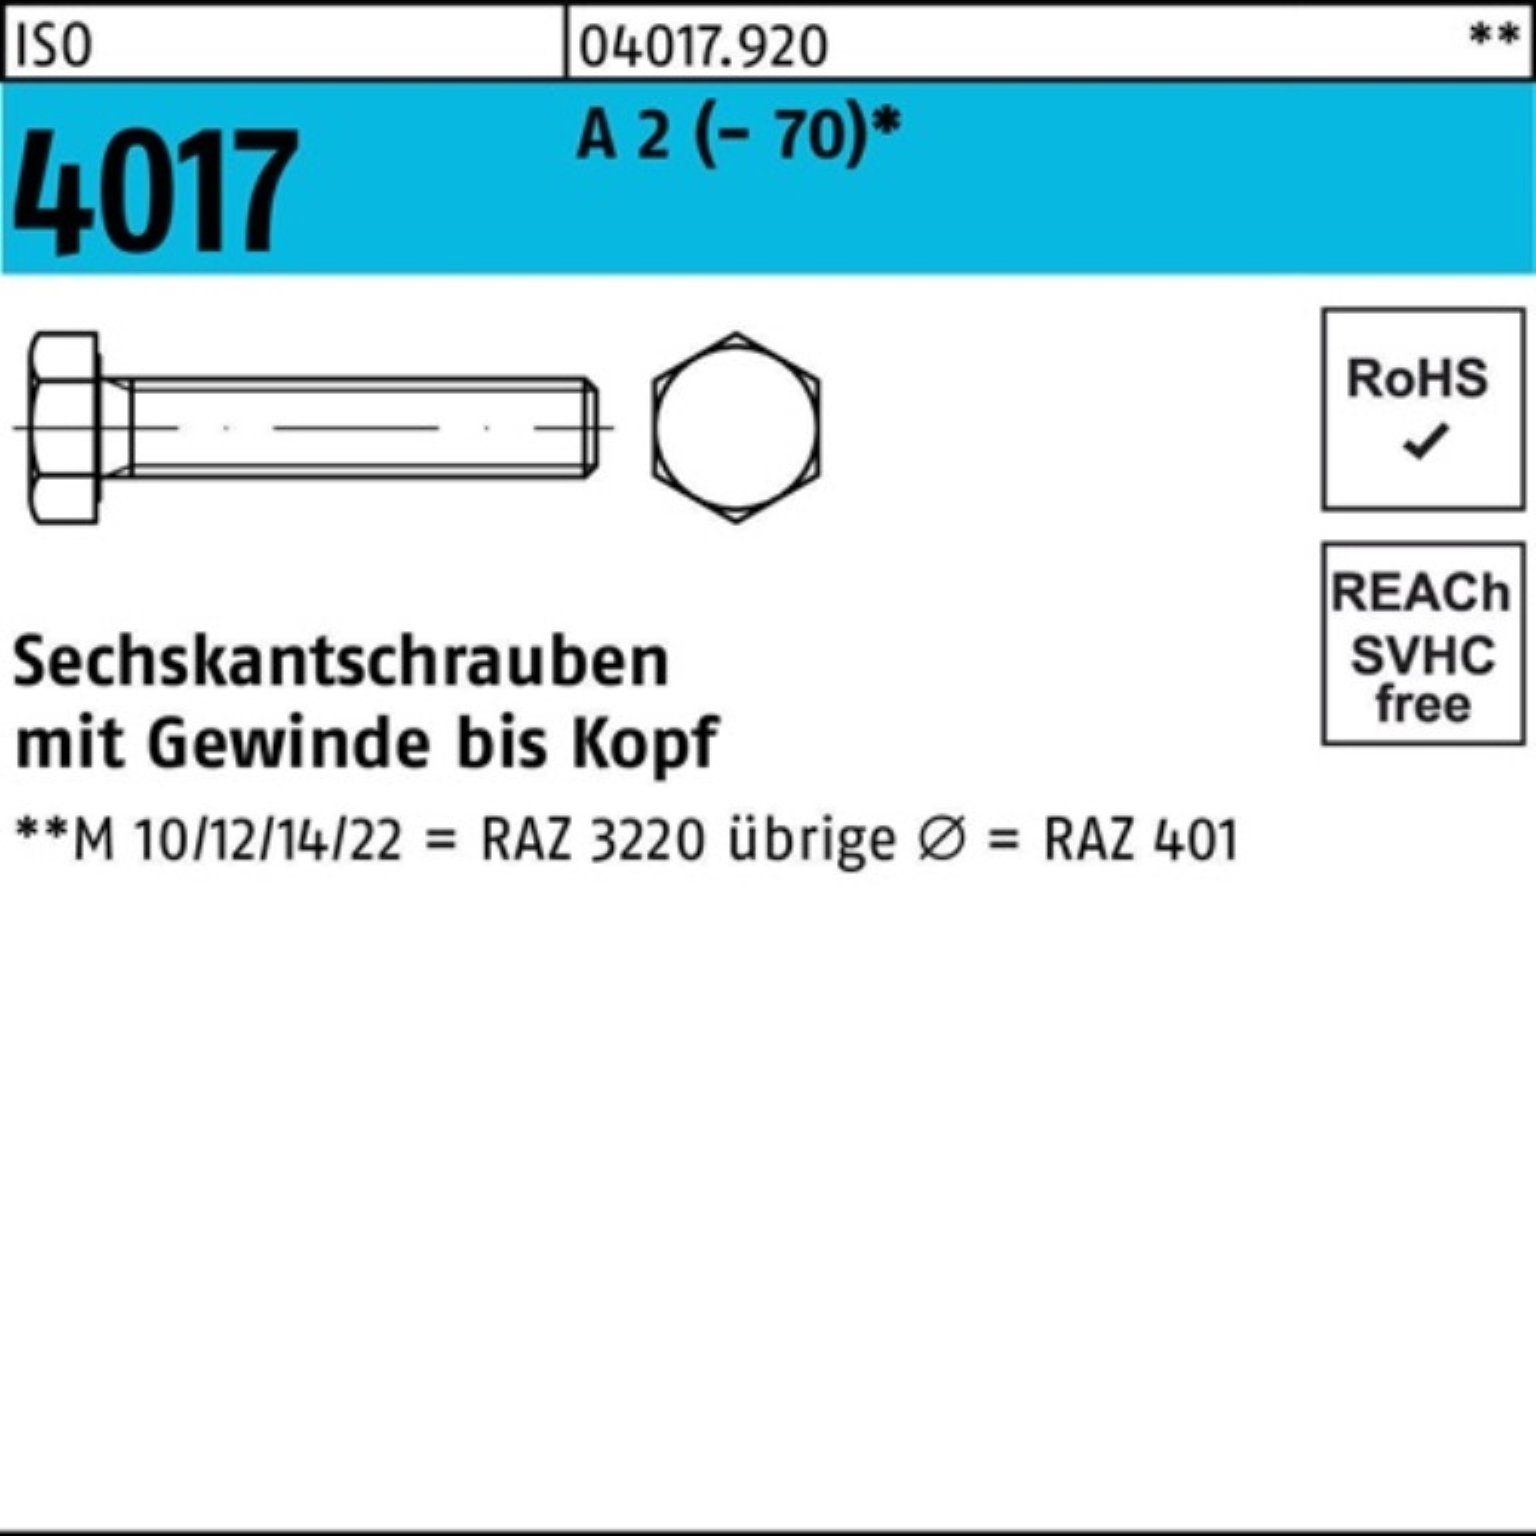 Sechskantschraube A 25 Pack M16x 100er Bufab 2 (70) Stück 90 4017 ISO Sechskantschraube VG